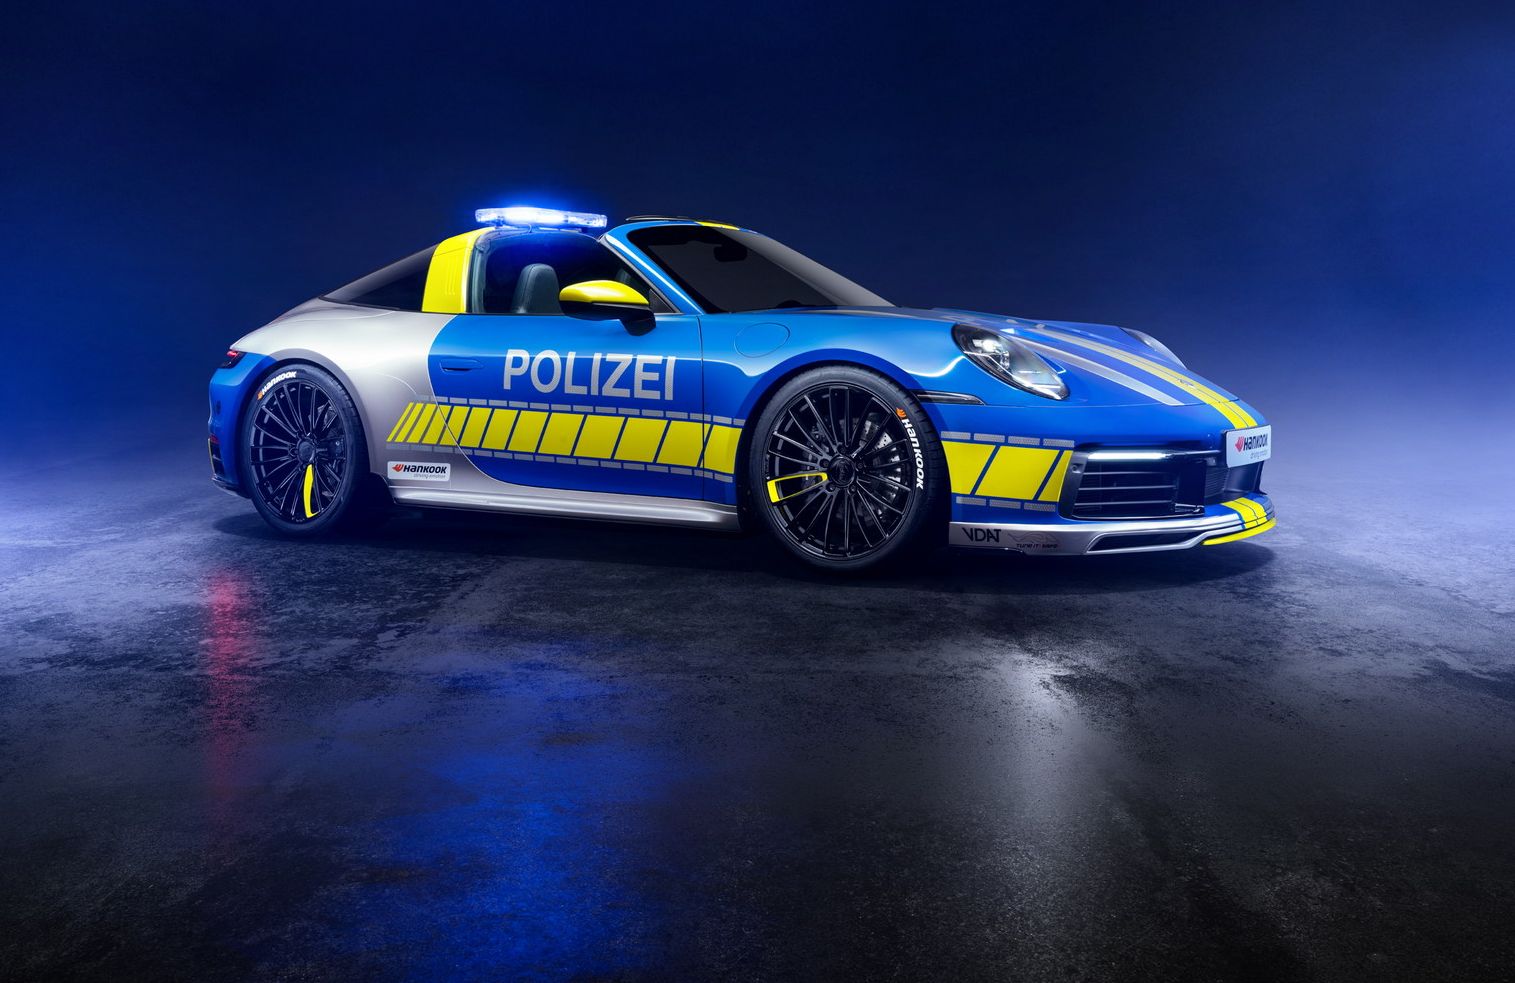 پورشه تیونینگ شده برای پلیس آلمان، پروژه تازه «تک آرت»